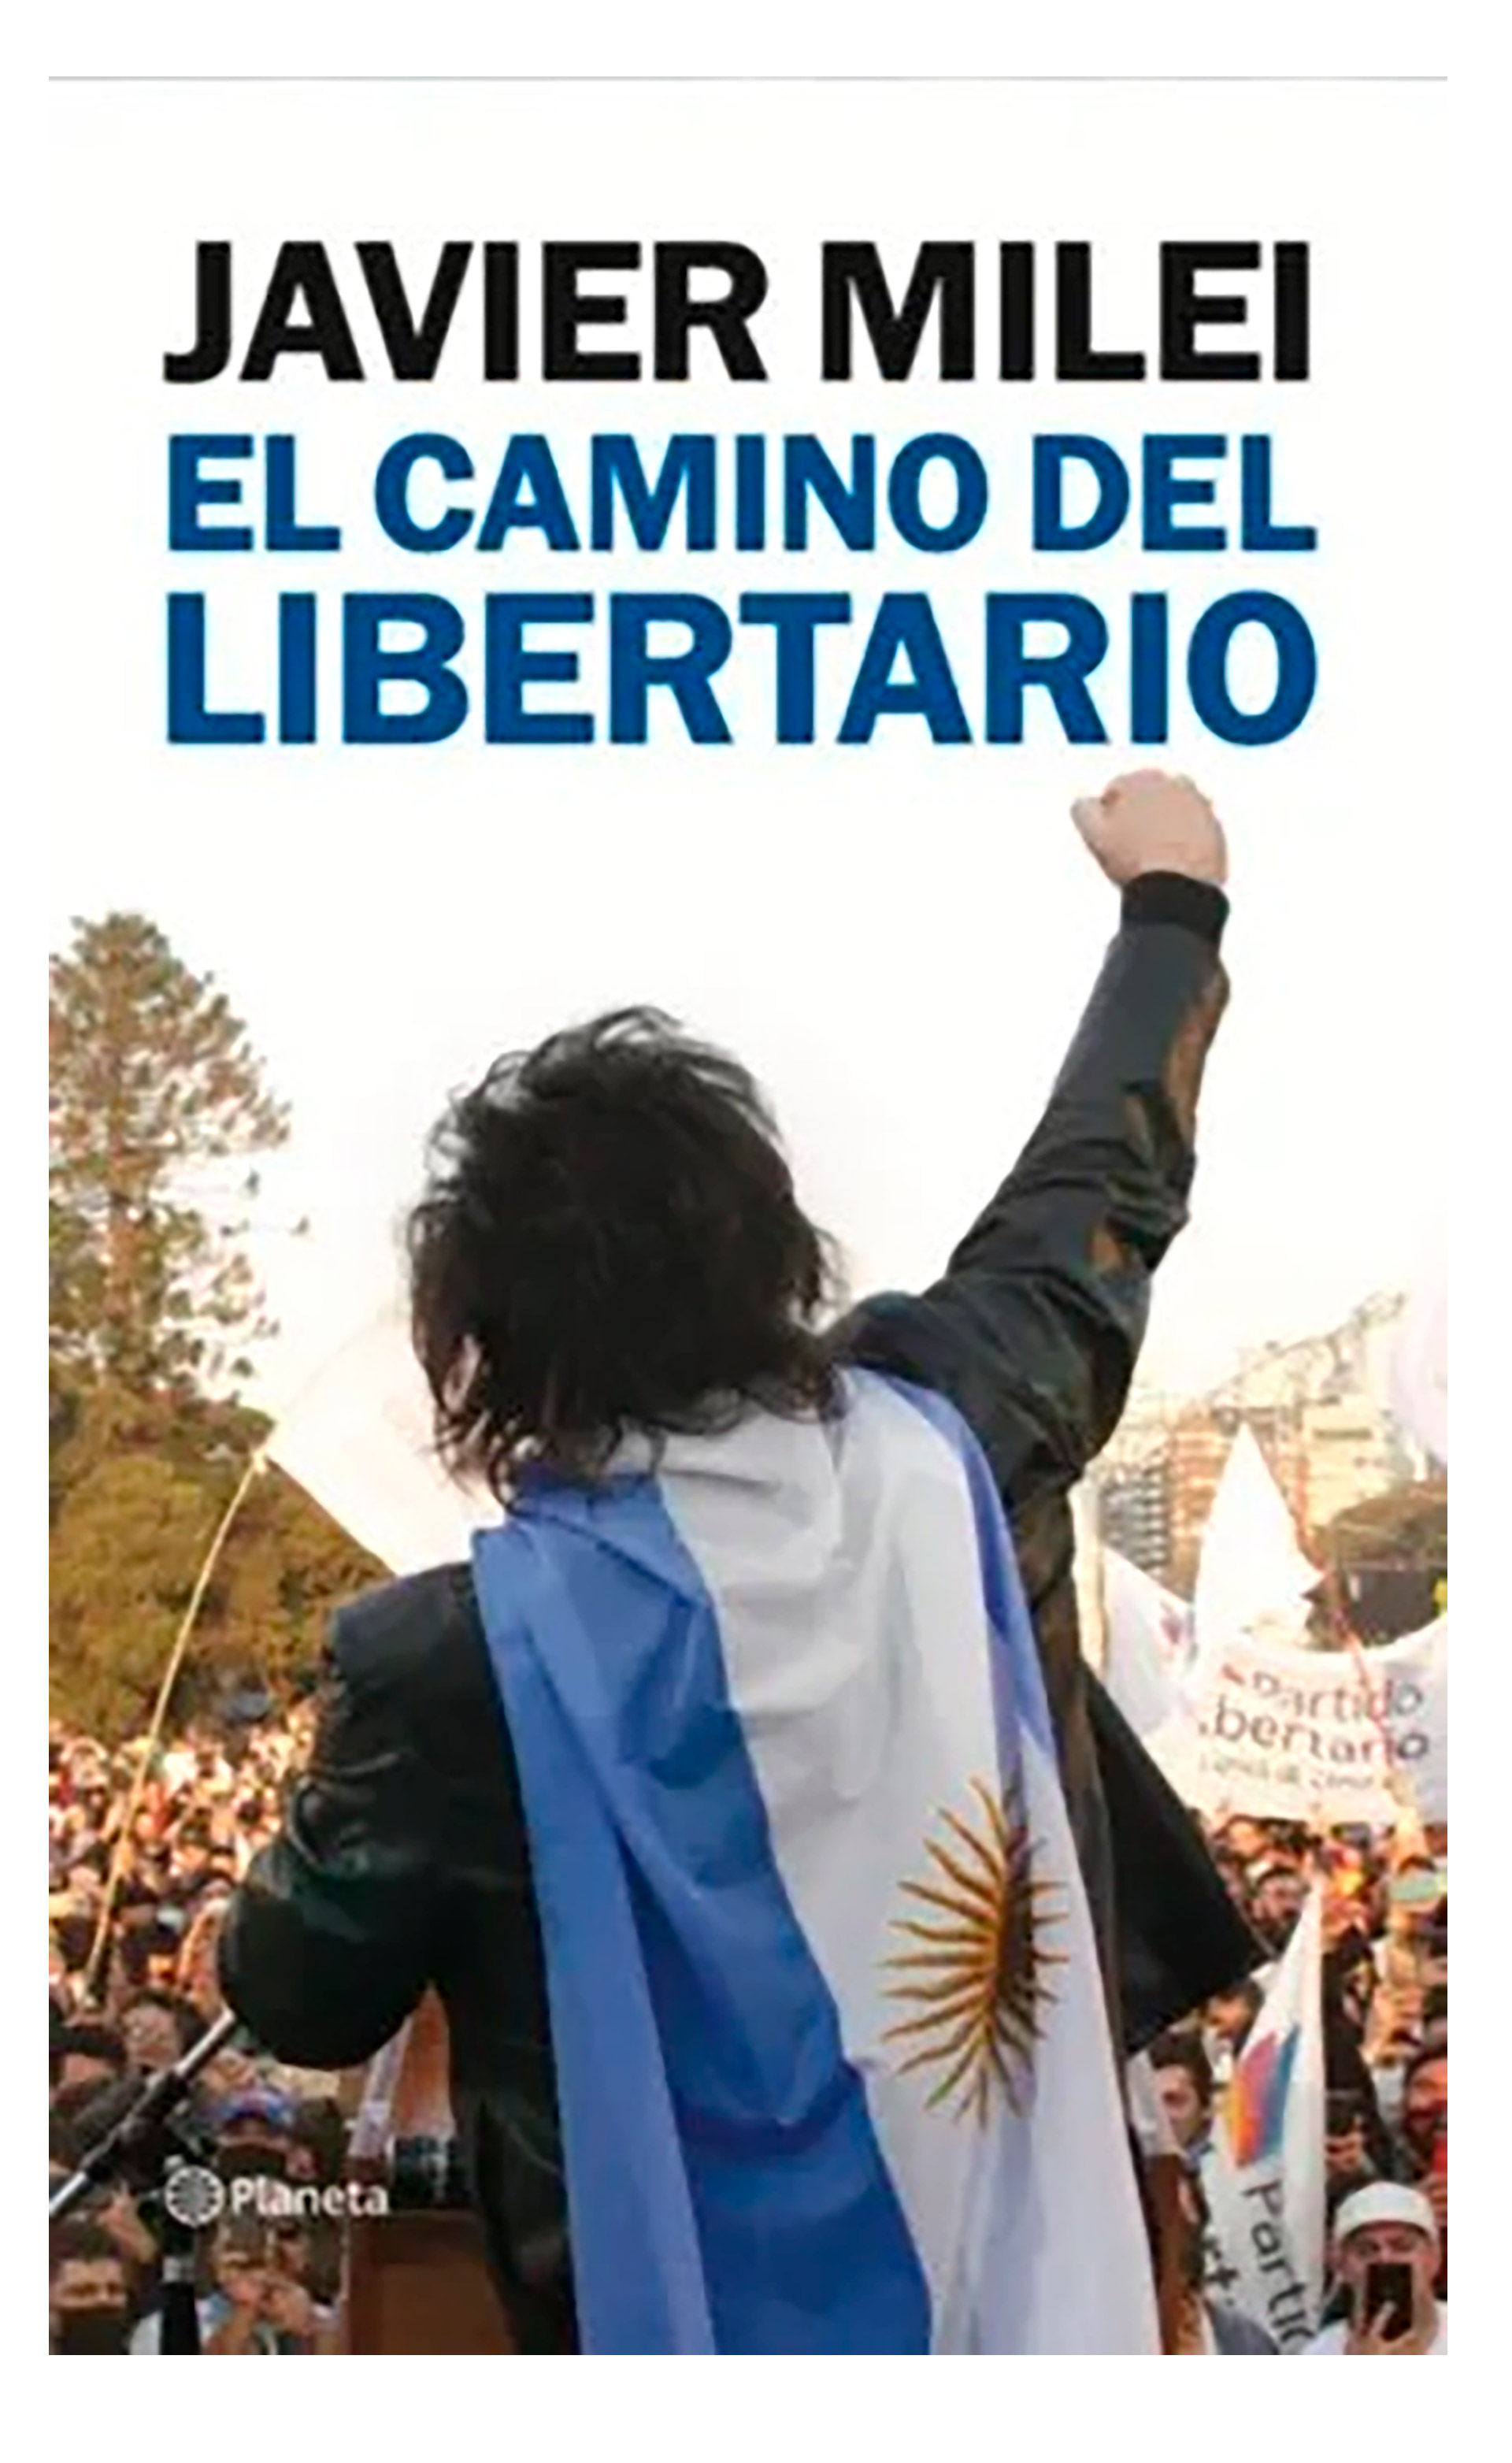 La tapa del libro que escribió Javier Milei, El camino del Libertario, de Editorial Planeta